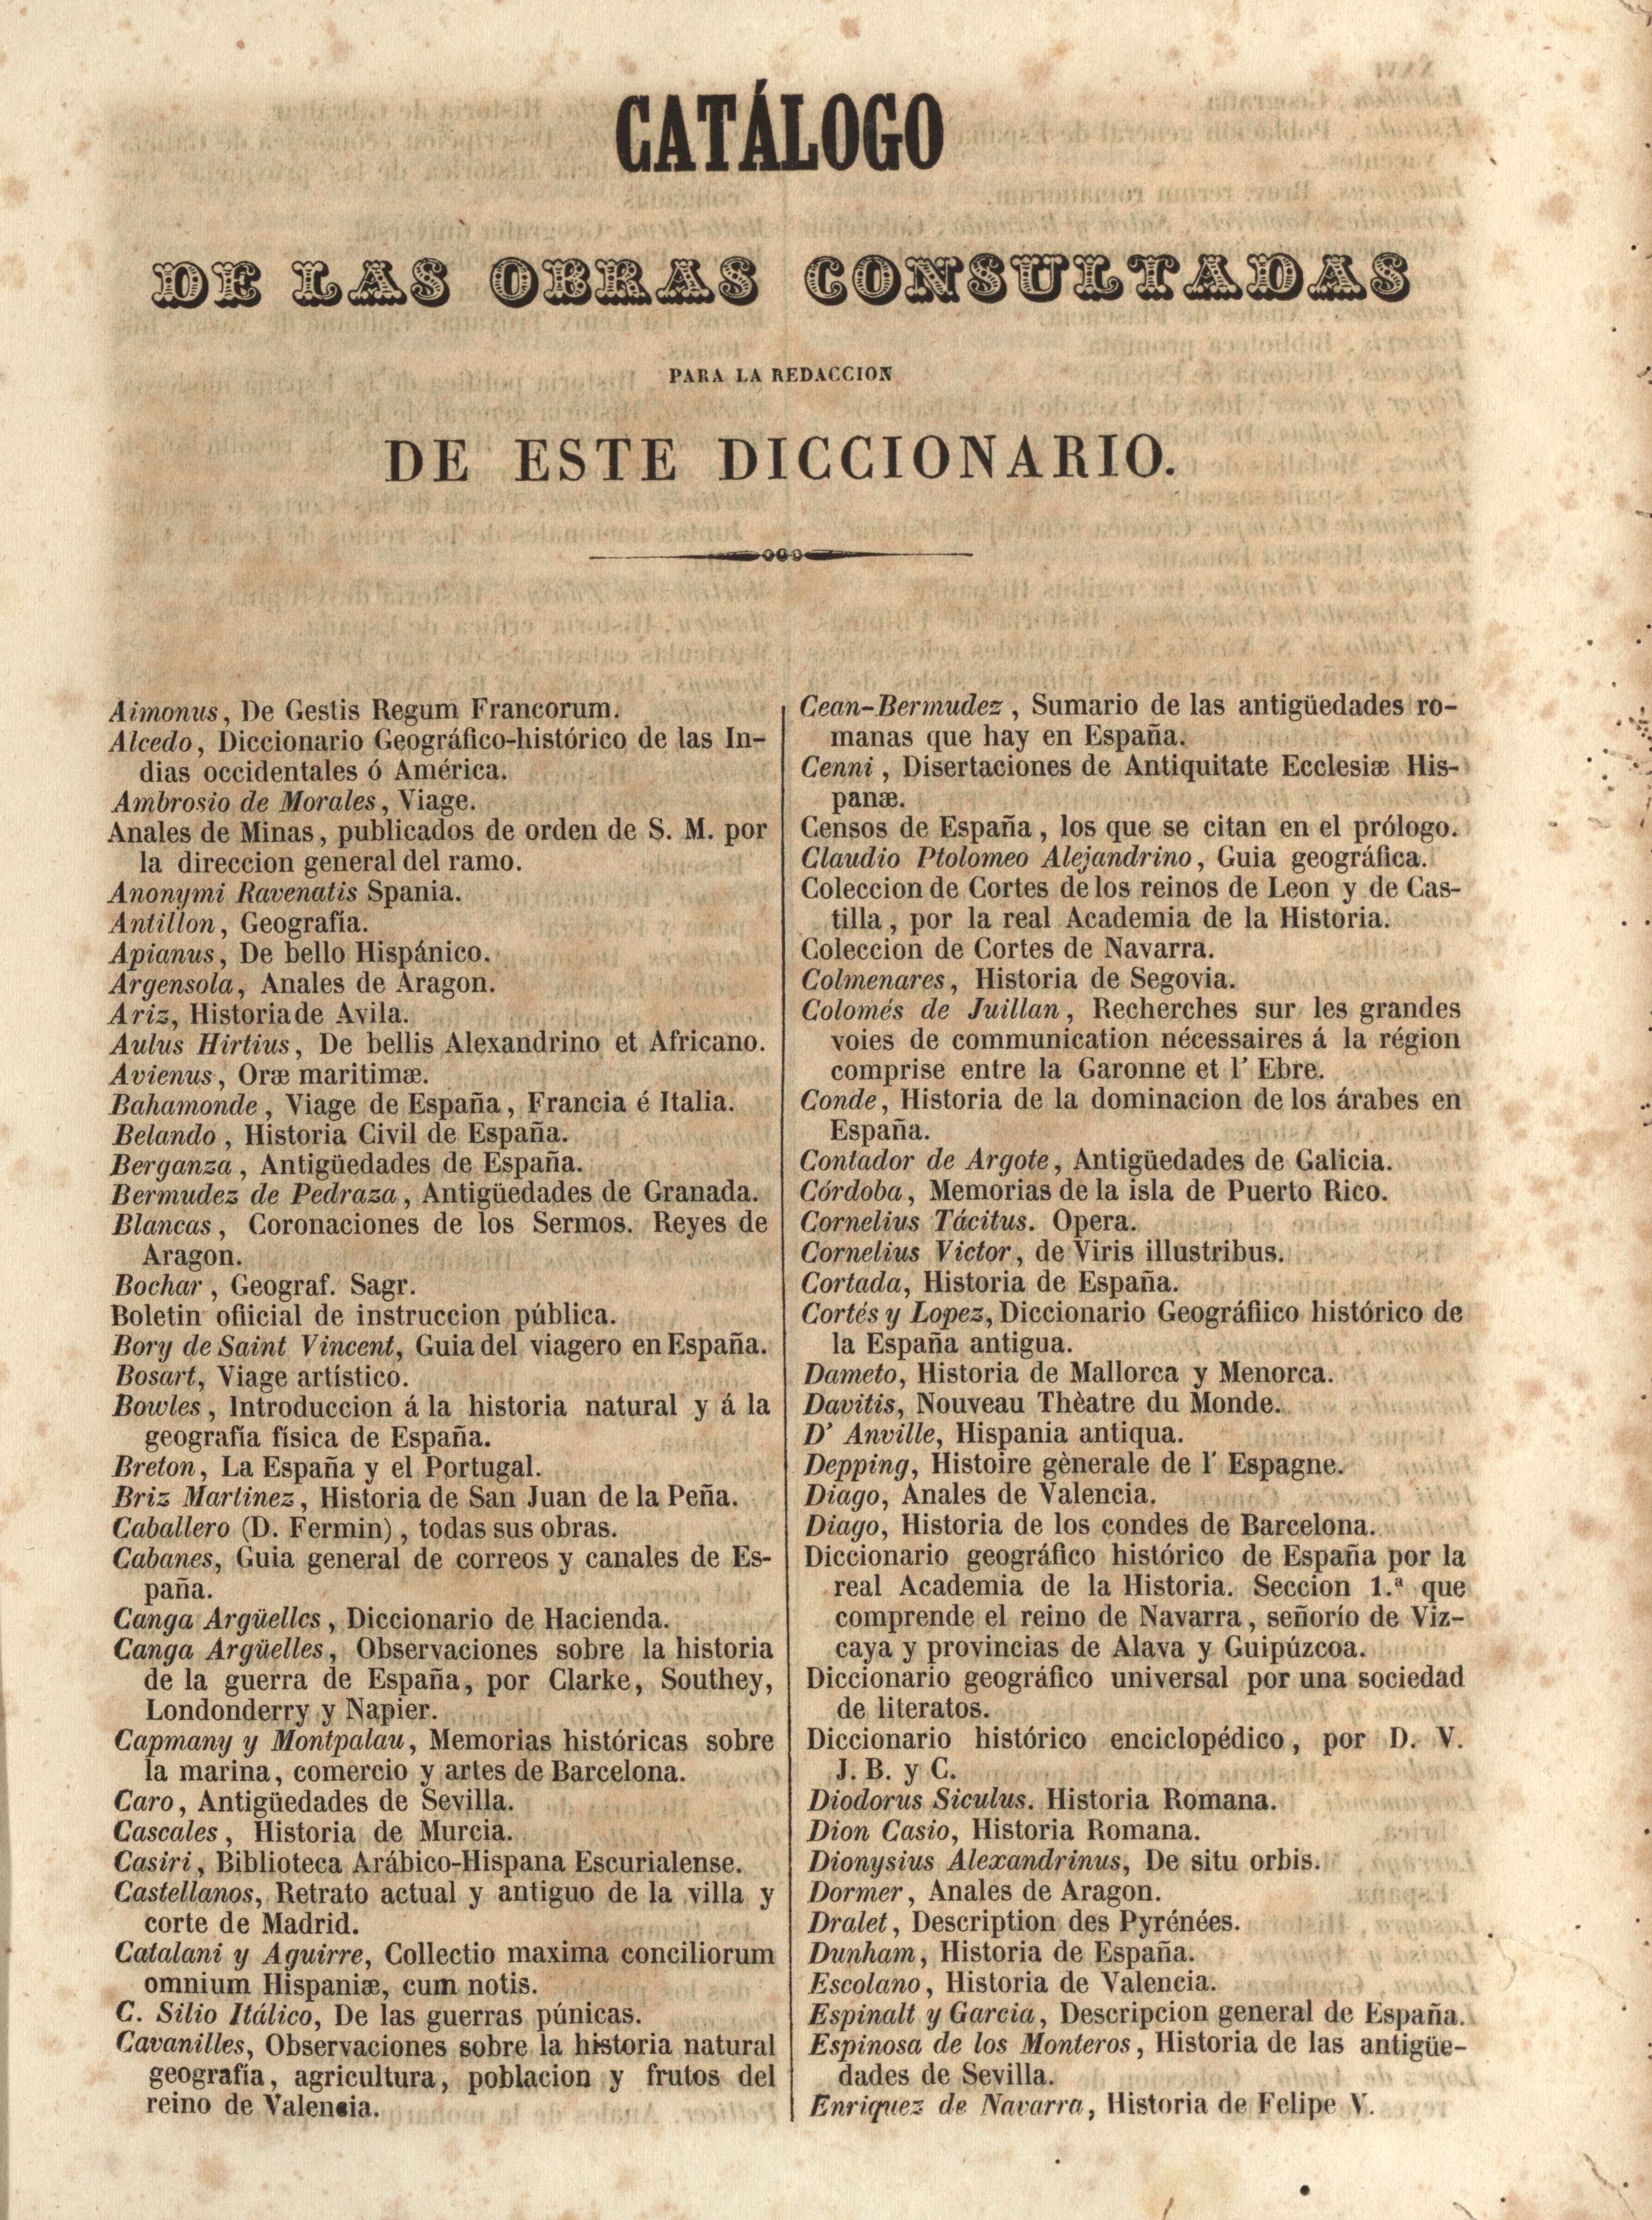 Catálogo de las obras consultadas para la redaccion de este diccionario